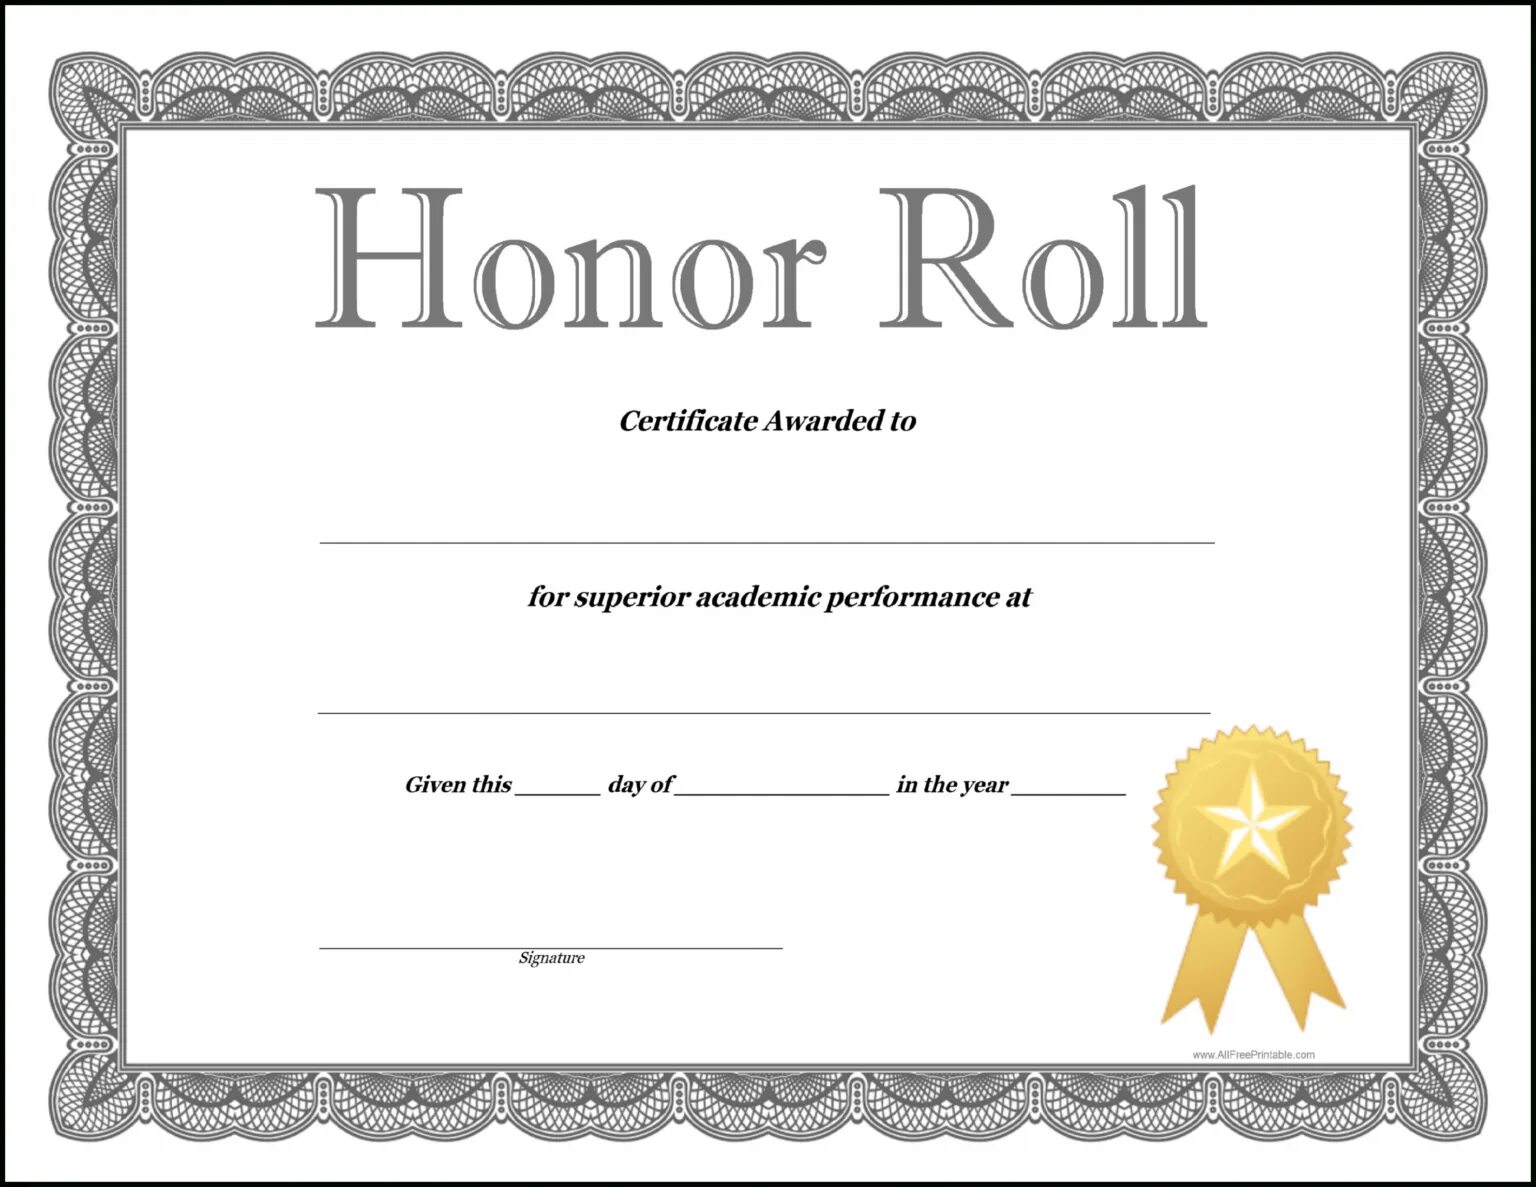 Сертификат шаблон. Certificate of Honor. Certificate of honour. Certificate of Honor Template.